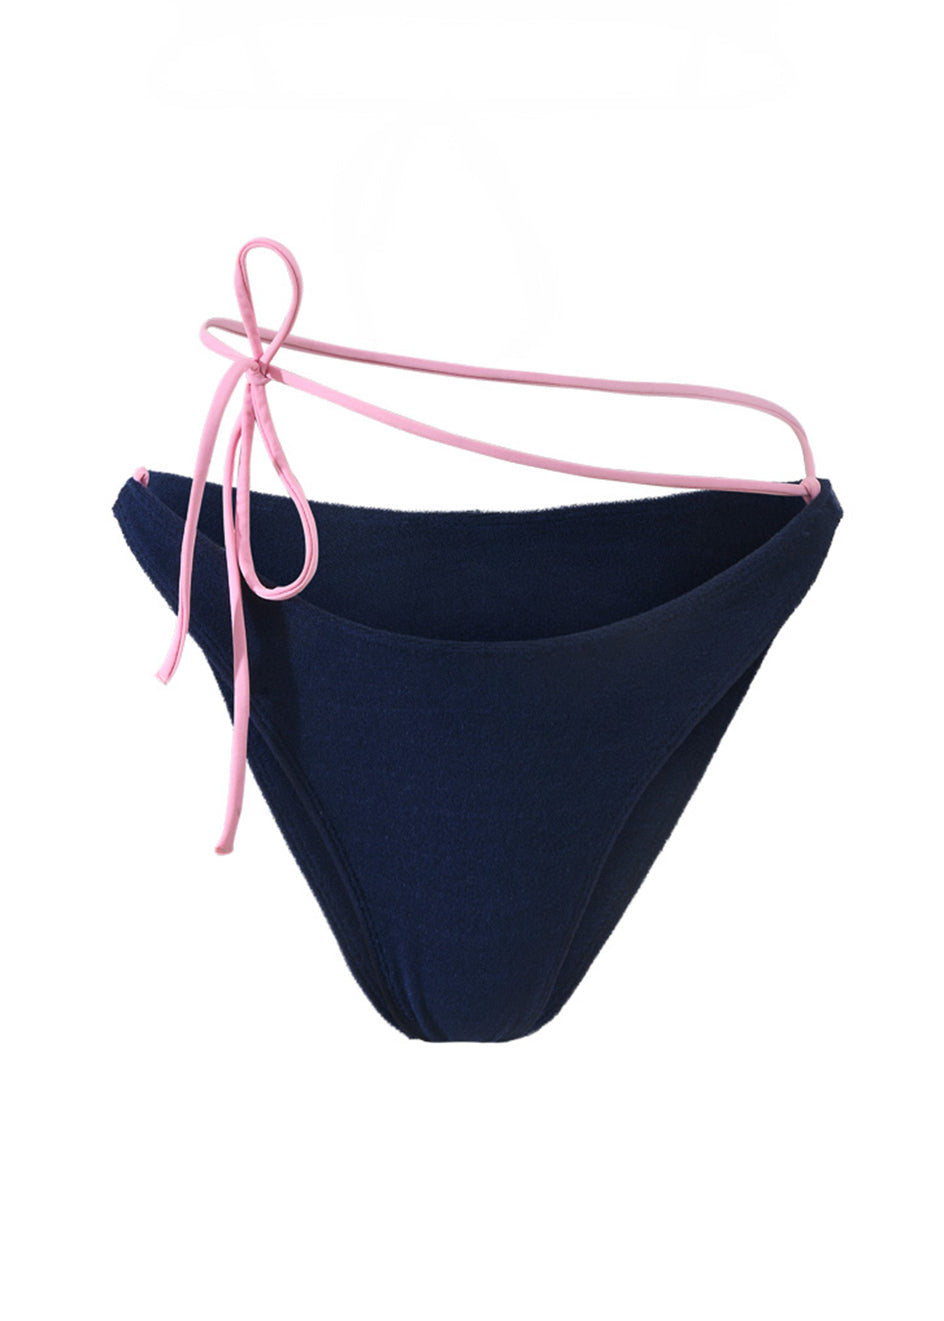 Photo détourée sur fond blanc du bas de maillot de bain Tiana en matière éponge bleu marine à bretelles rose claire